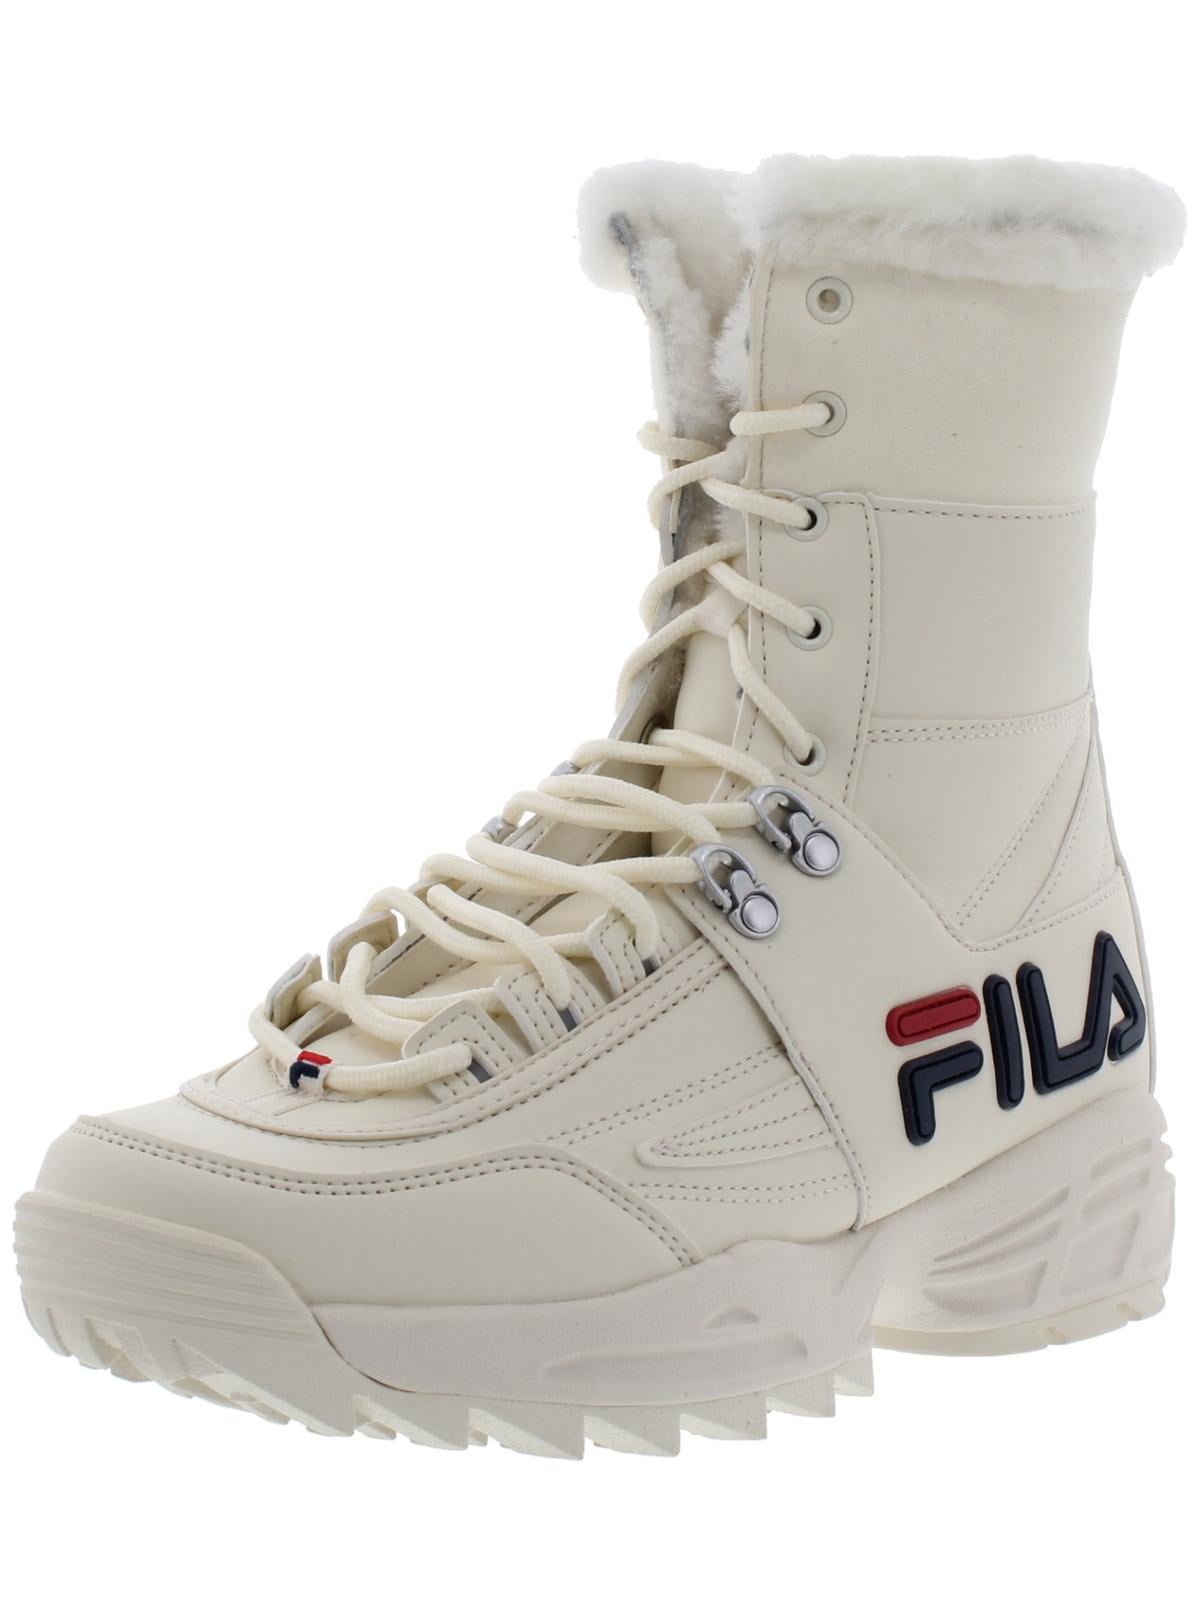 fila disruptor sneaker boot